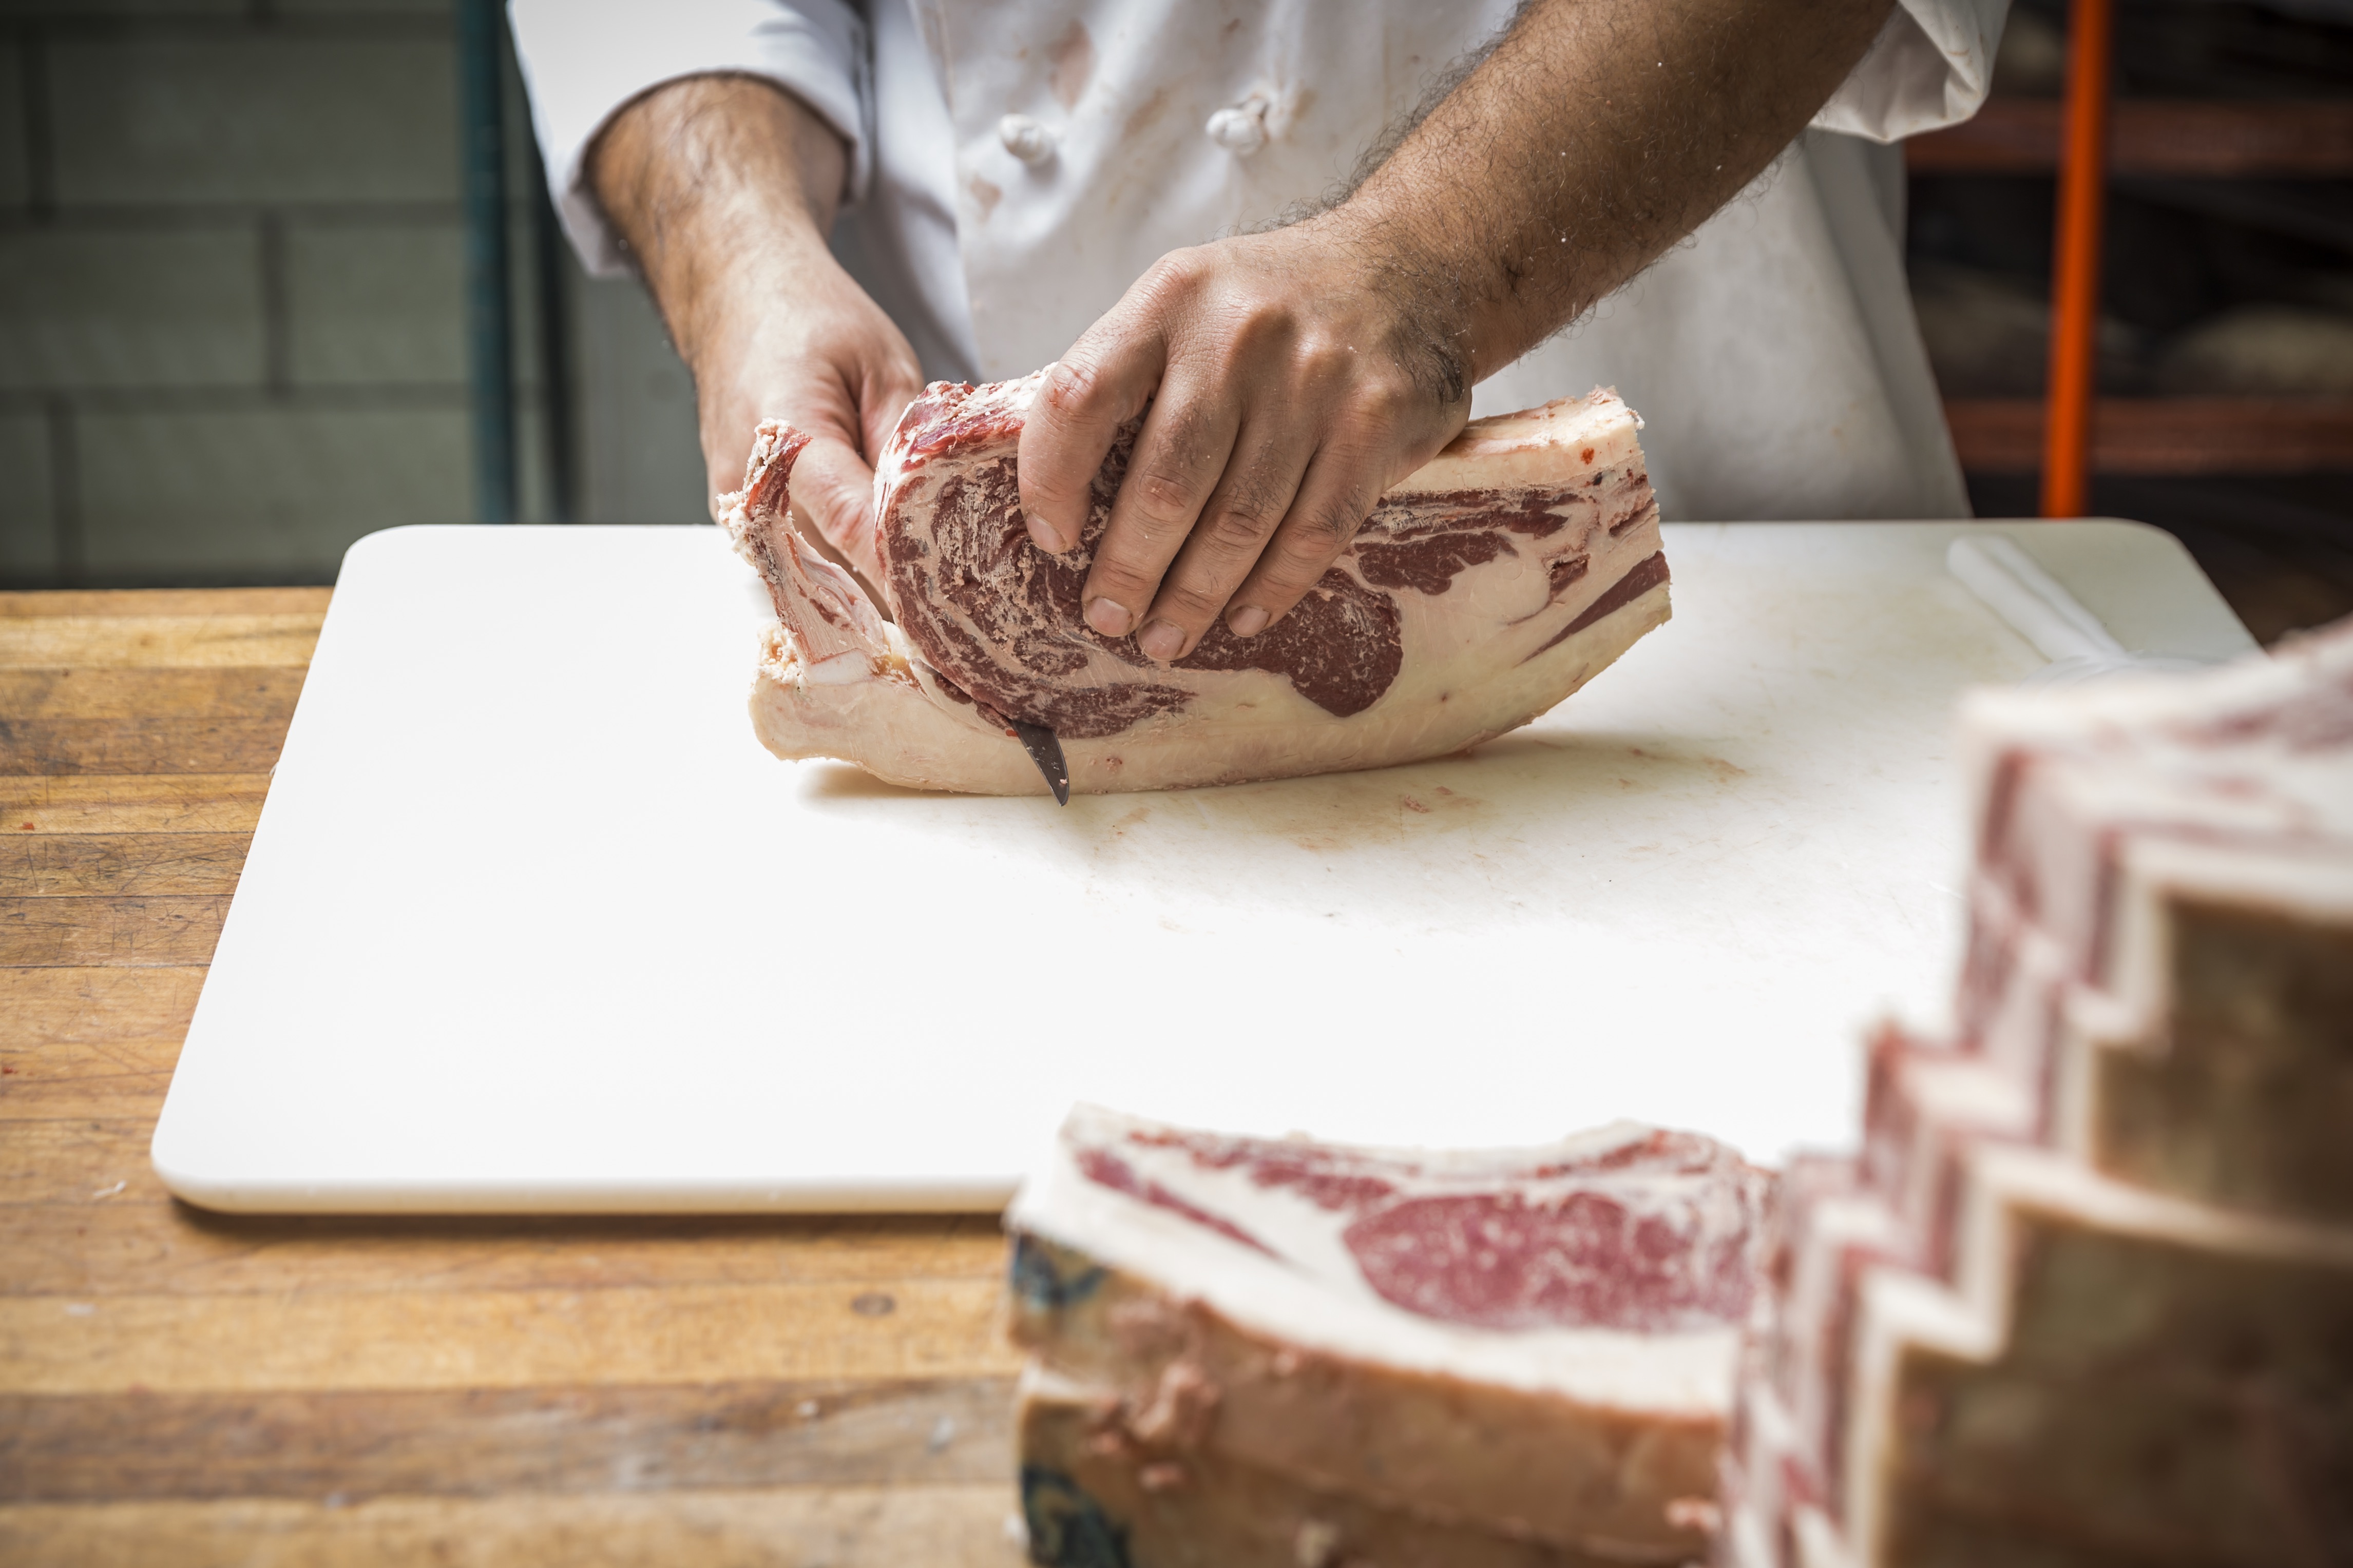 The Roadhouse butcher trims a freshly cut ribeye steak.